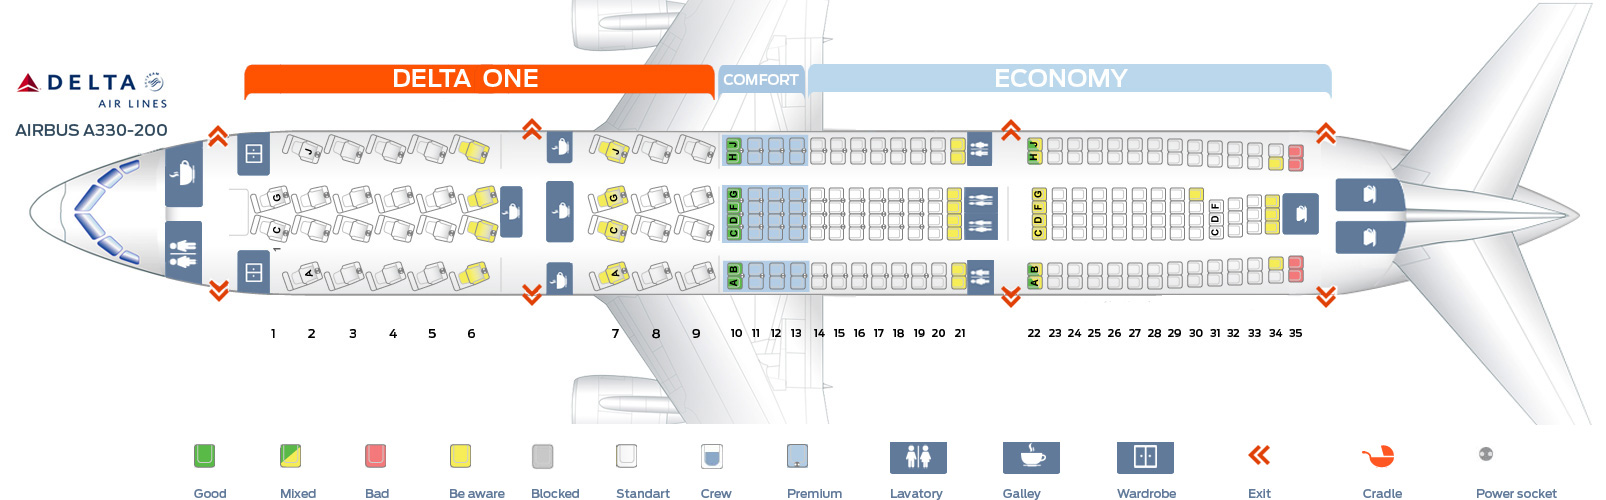 Delta International Flights Seating Chart